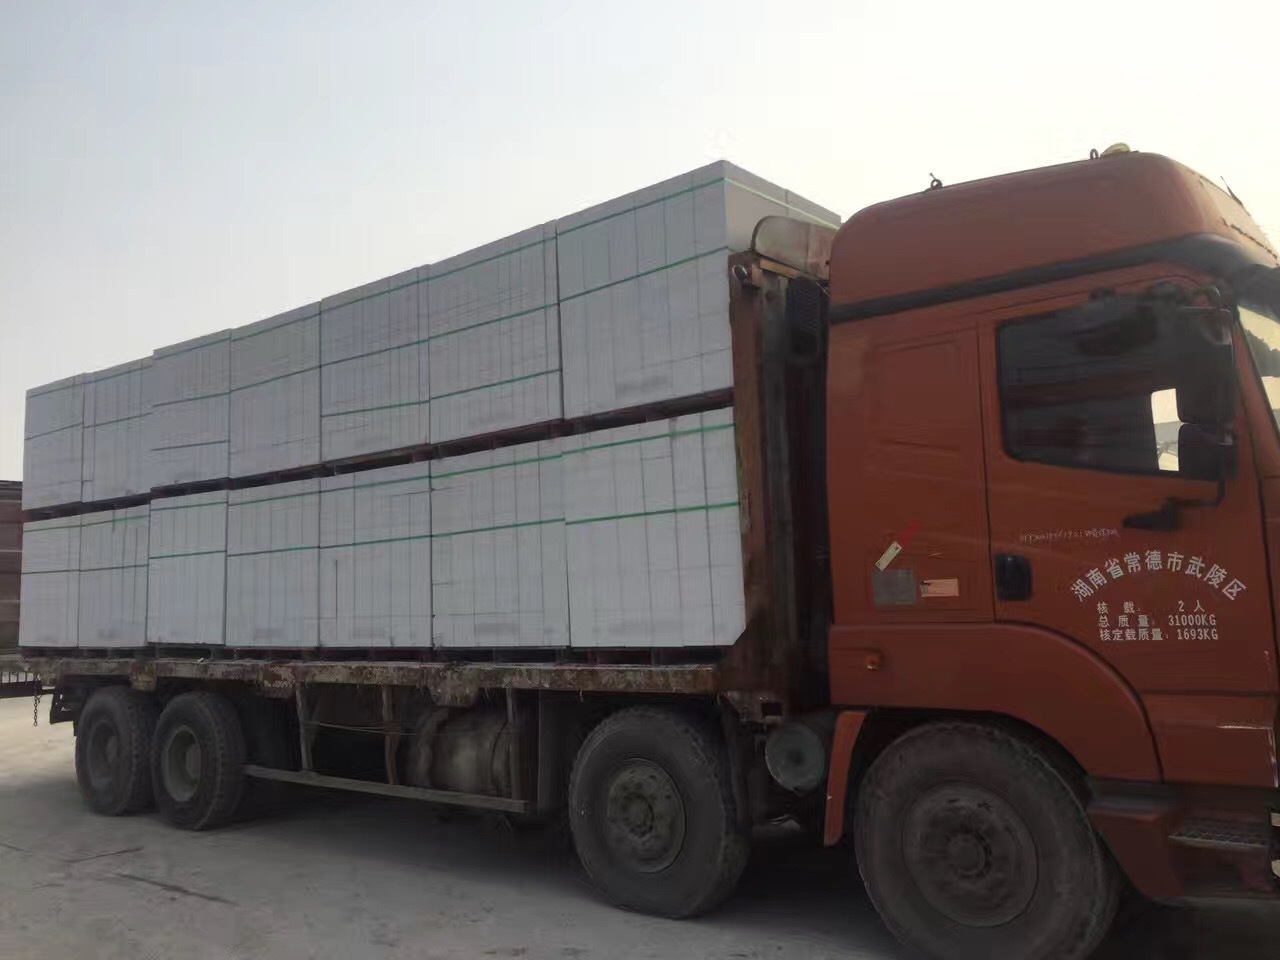 卢龙杭州宁波嘉兴加气砼砌块墙体及装饰工程质量控制